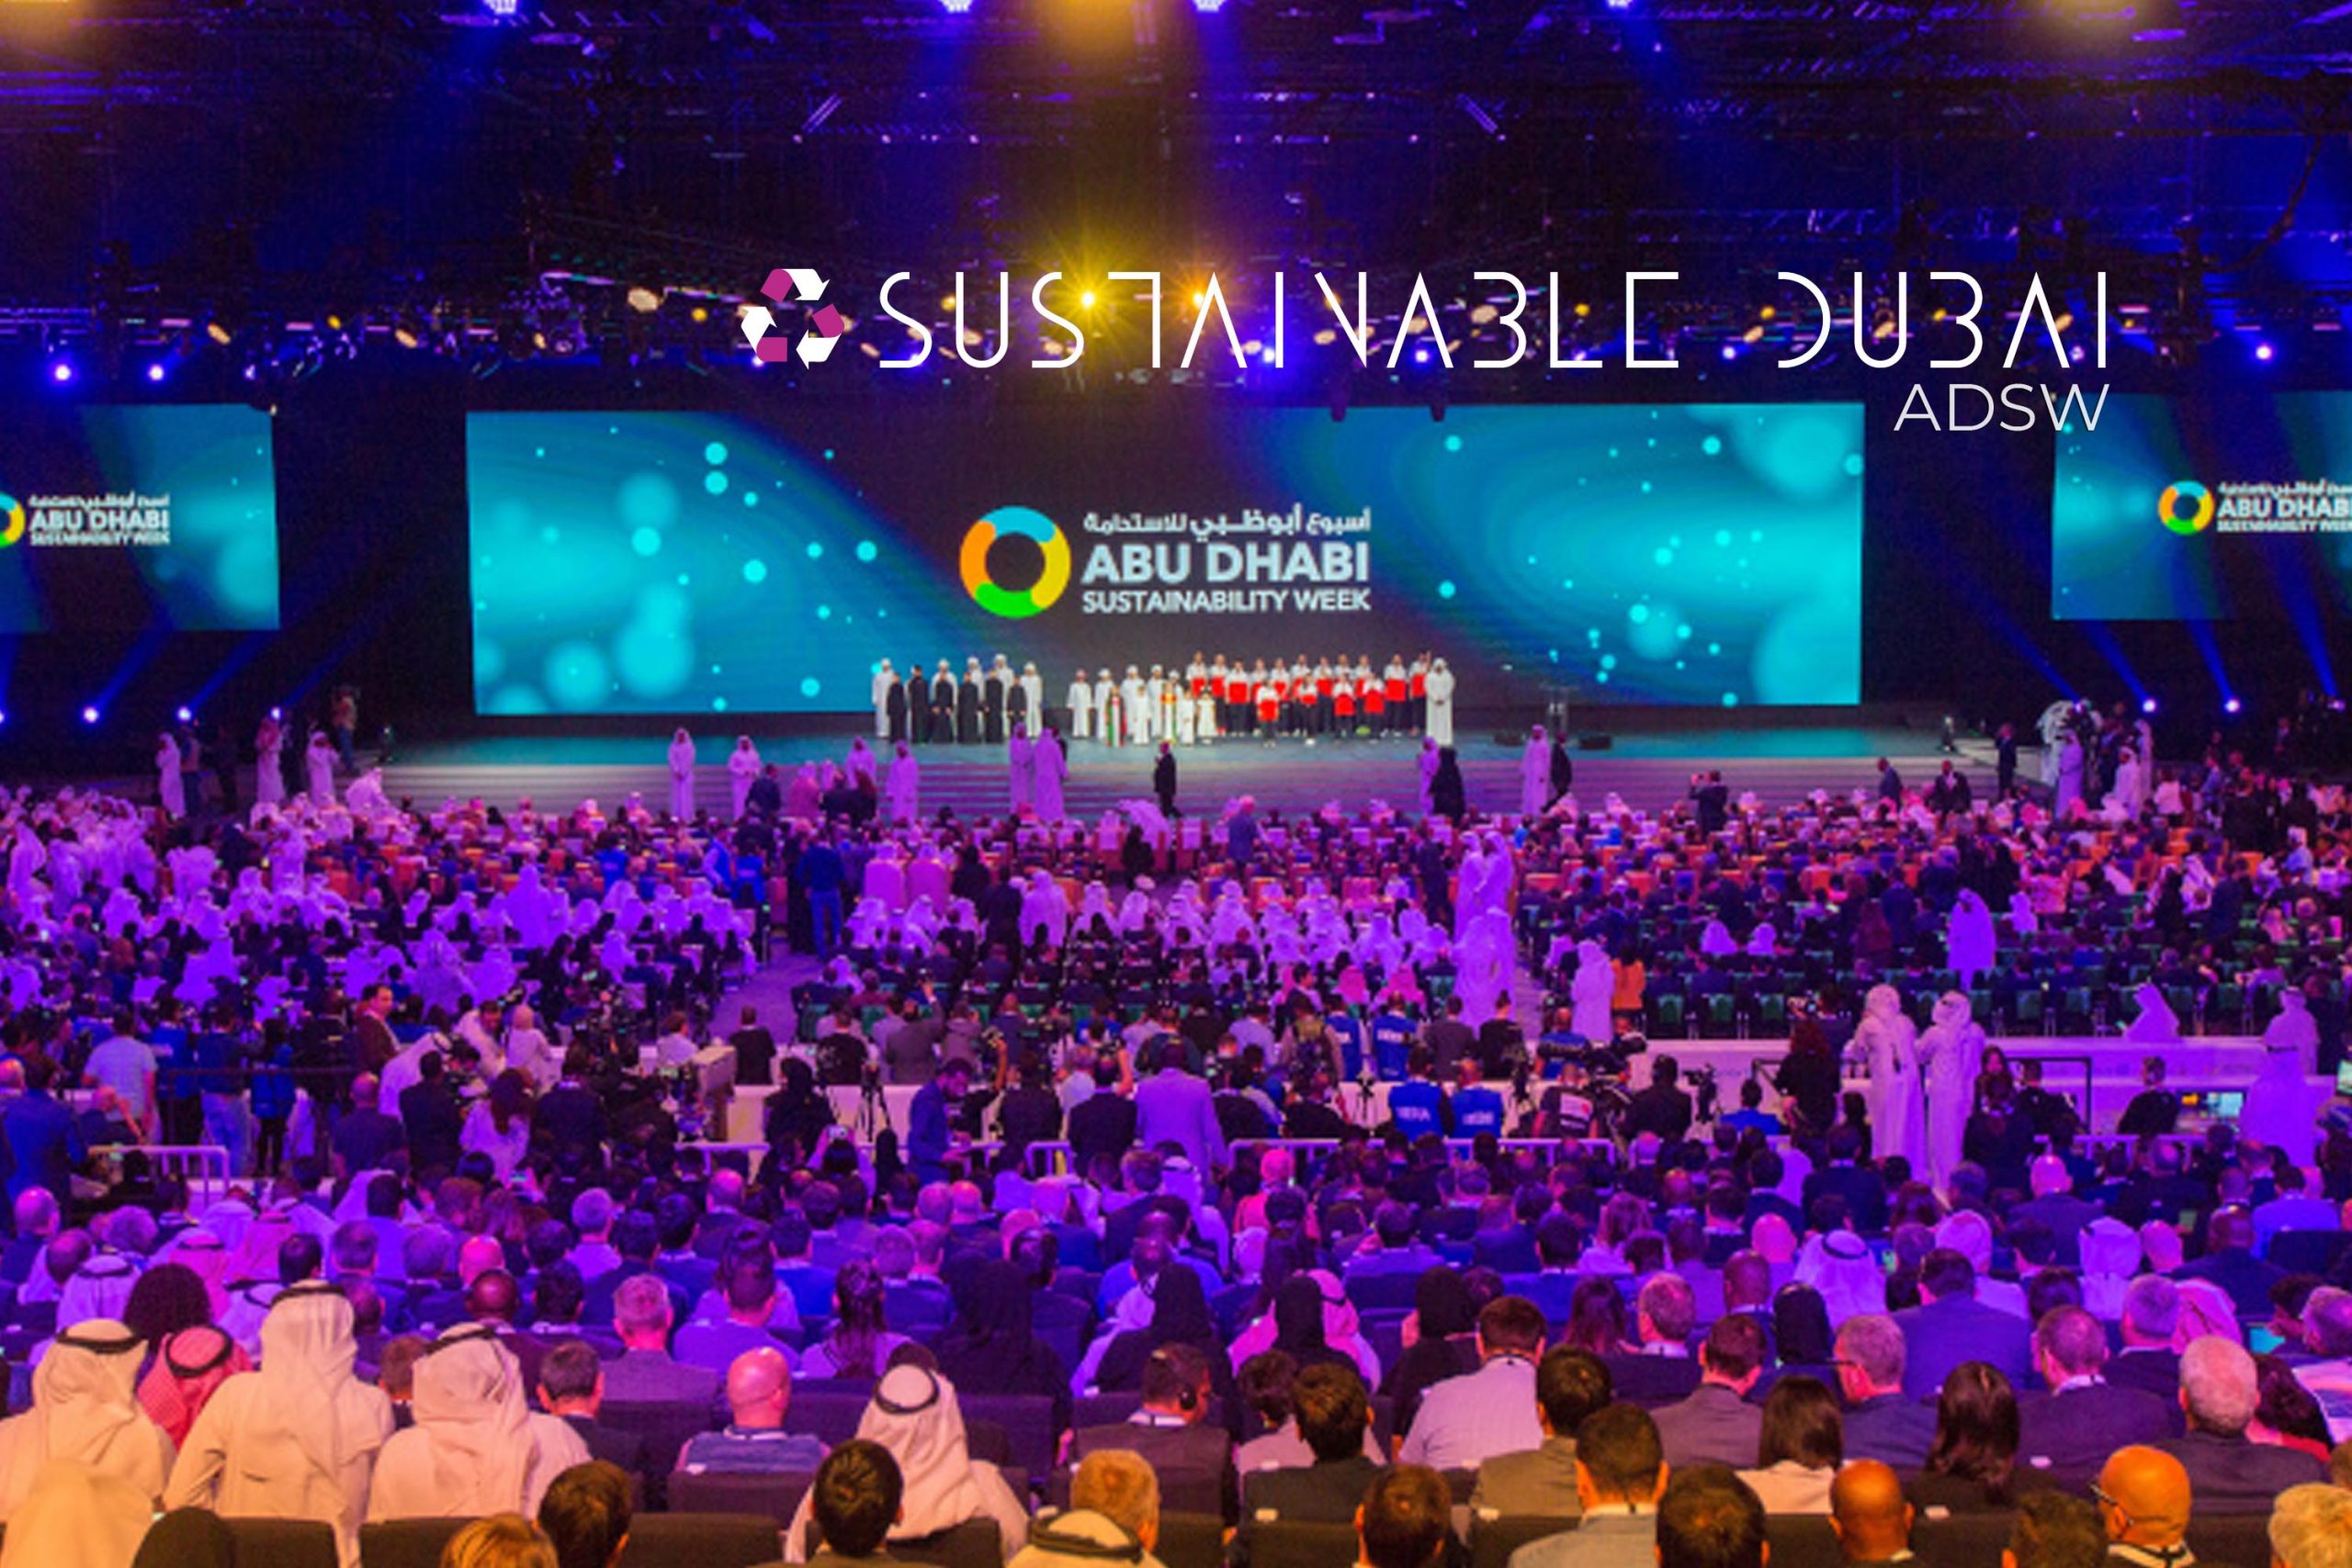 Abu Dhabi Sustainability Week (ADSW) Sustainable Dubai